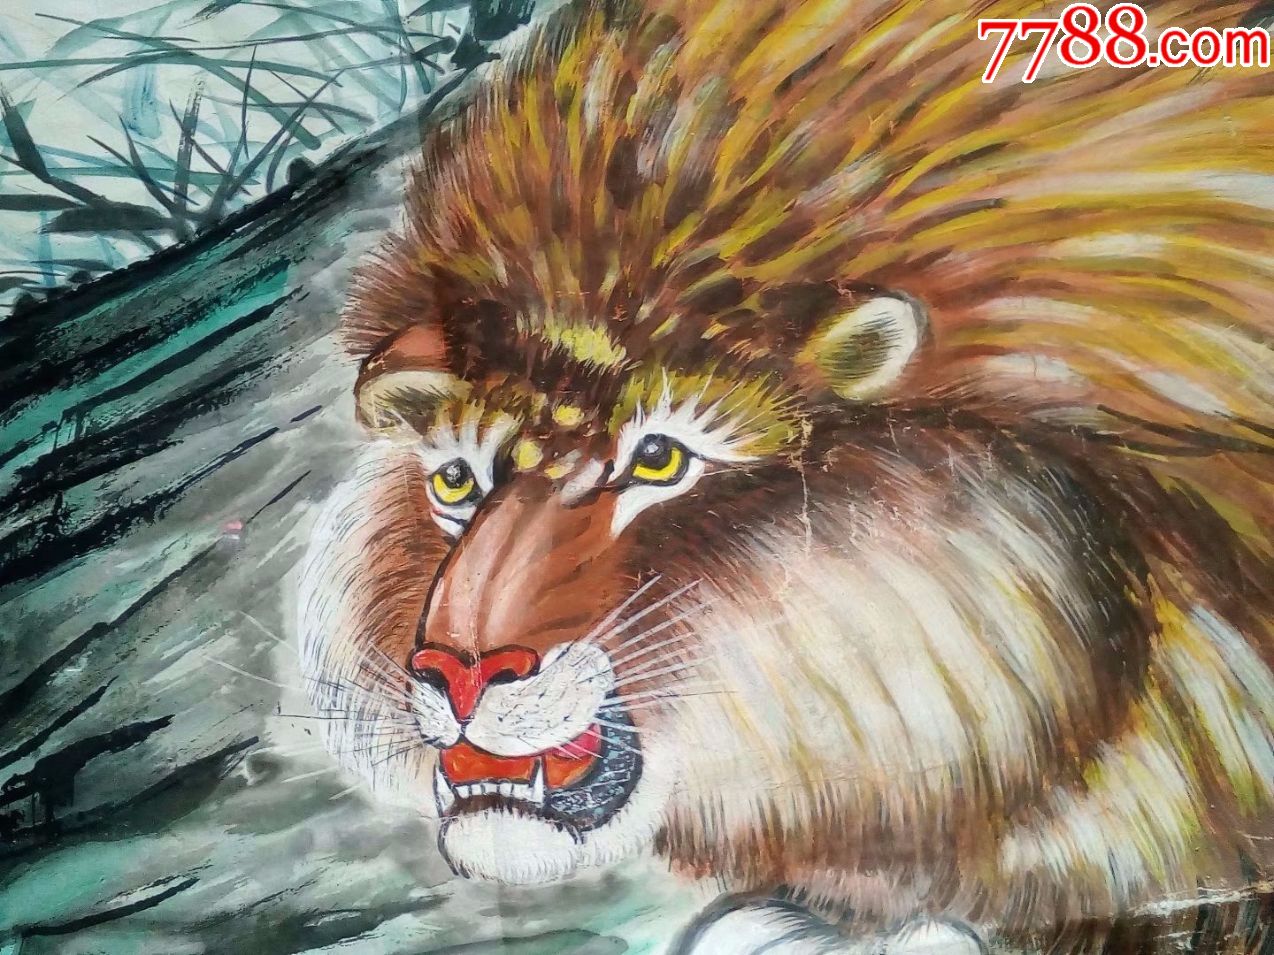 1980年四尺中堂花鸟画国画动物猛兽老虎狮子,那时古玩